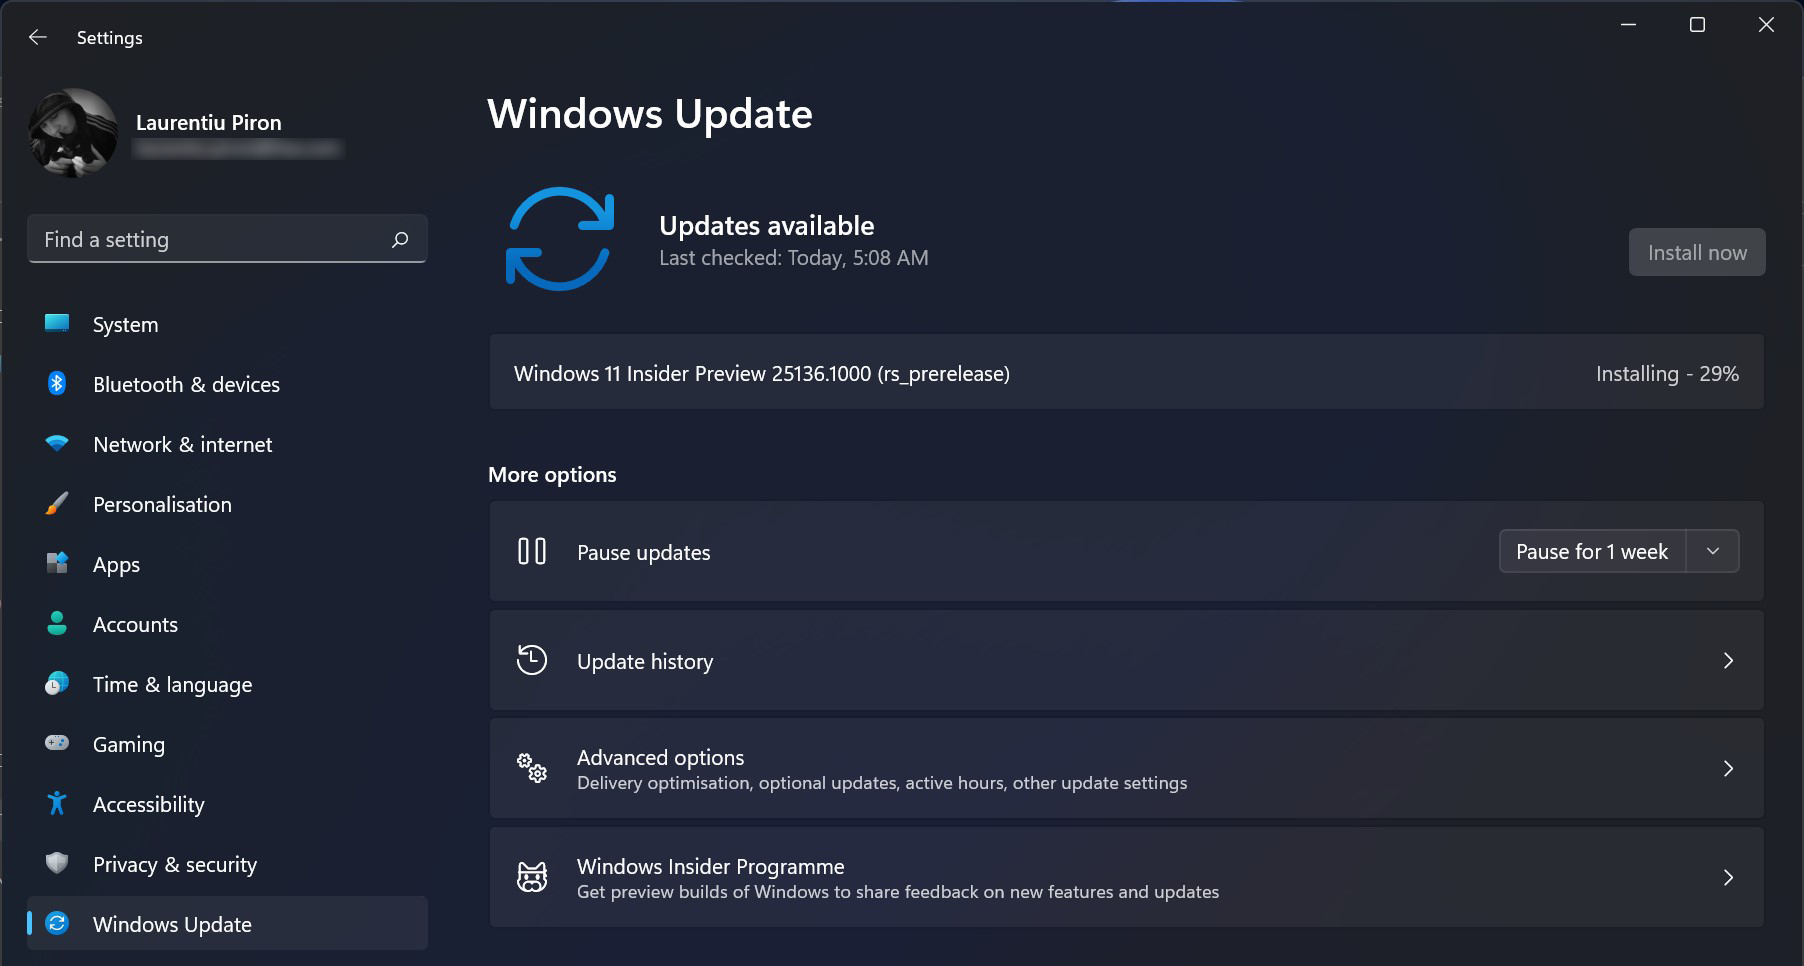 Install Windows 11 Предварительный просмотр Insider